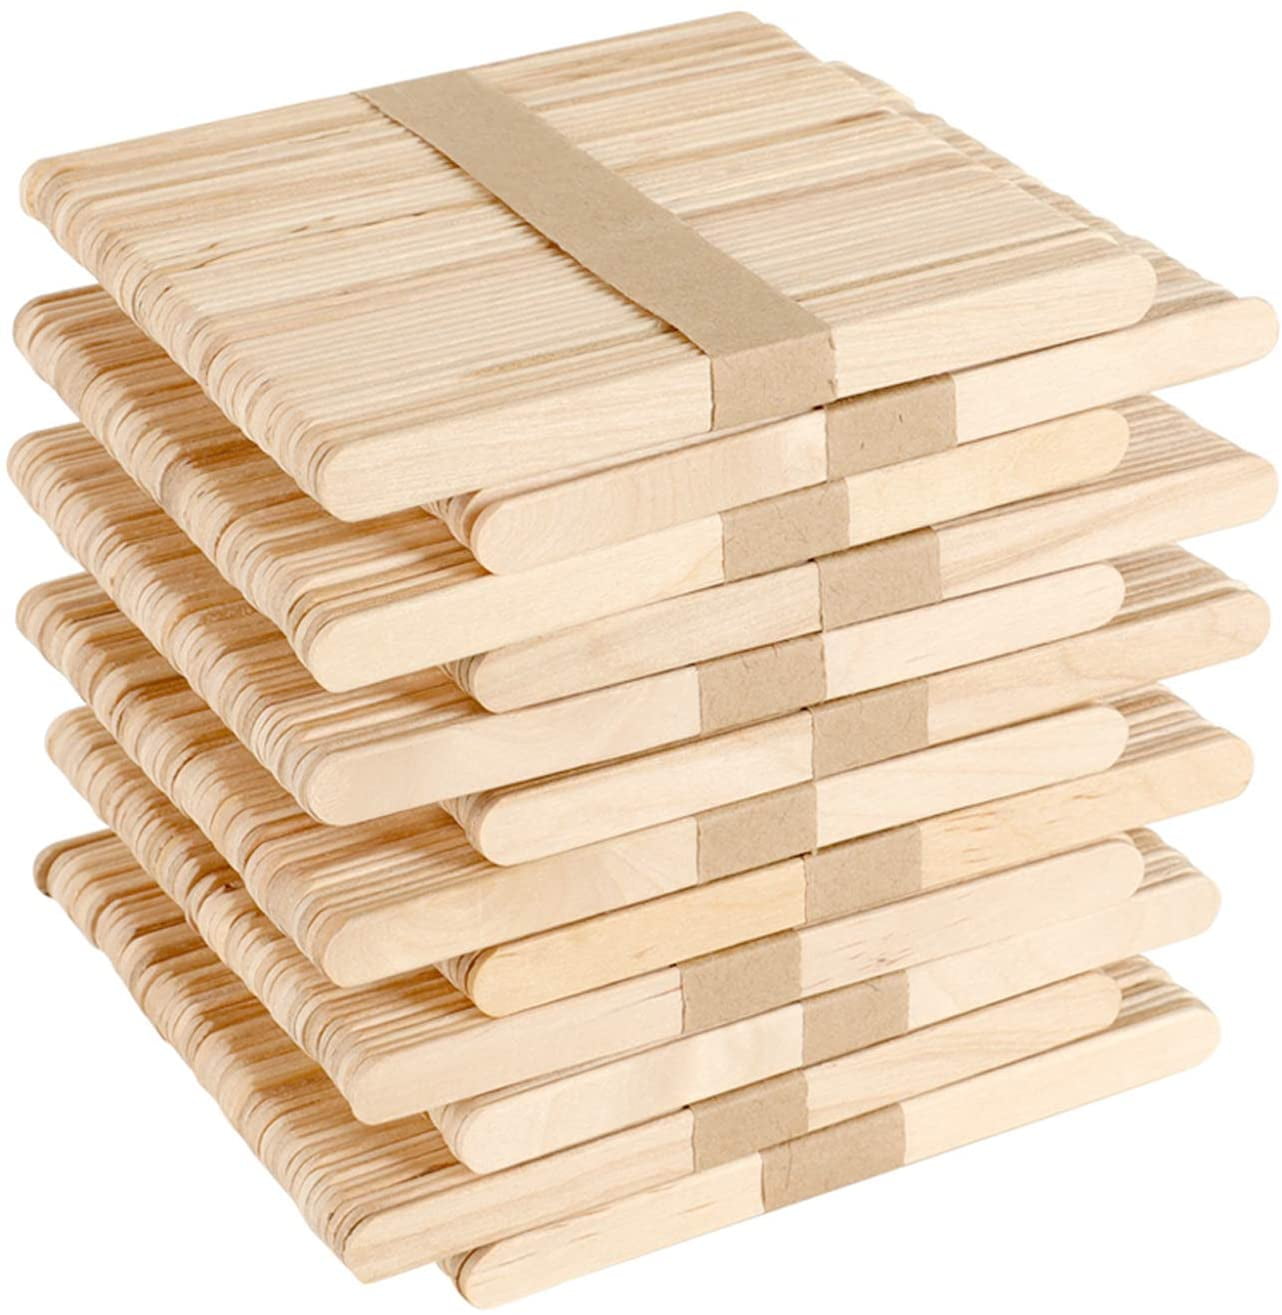 Holzstiele Holz Eisstiele Holzspatel Holzstäbchen Bastelstiele, 50-500 Stück